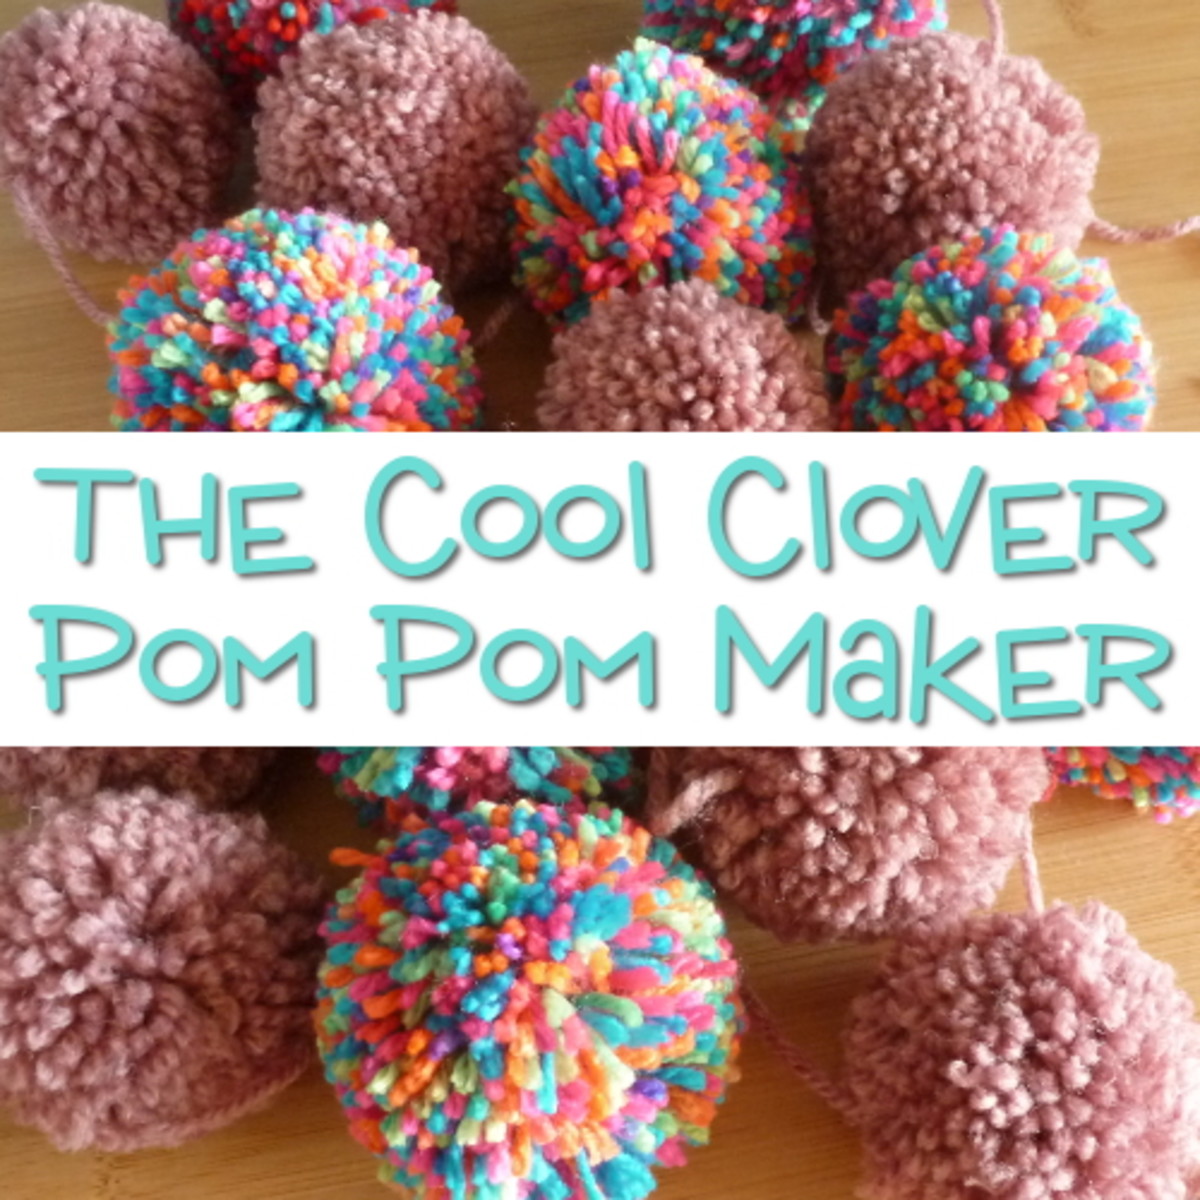 The Cool Pom Pom Maker by Clover